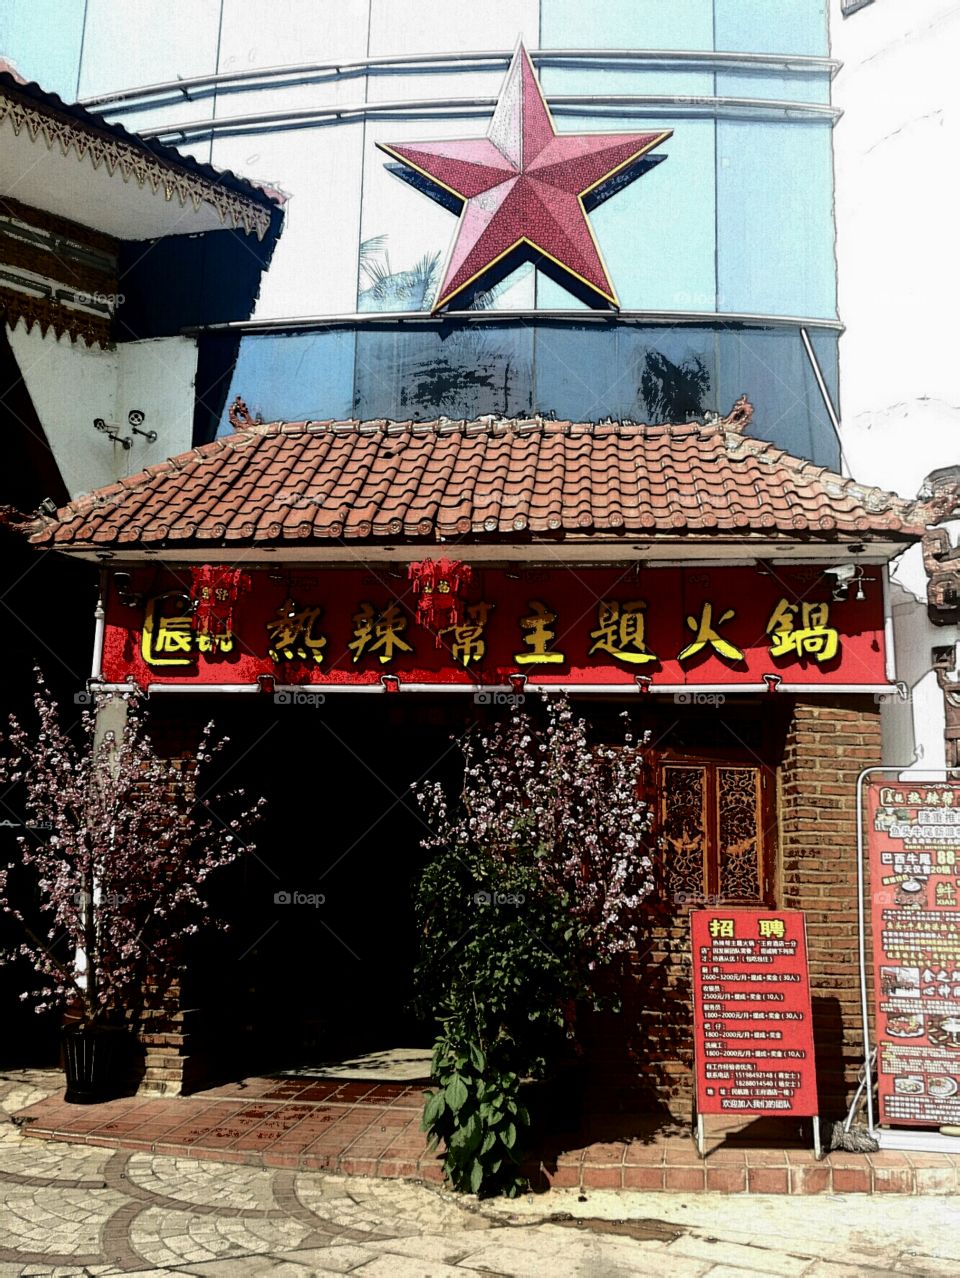 Chinese Restaurant China red star